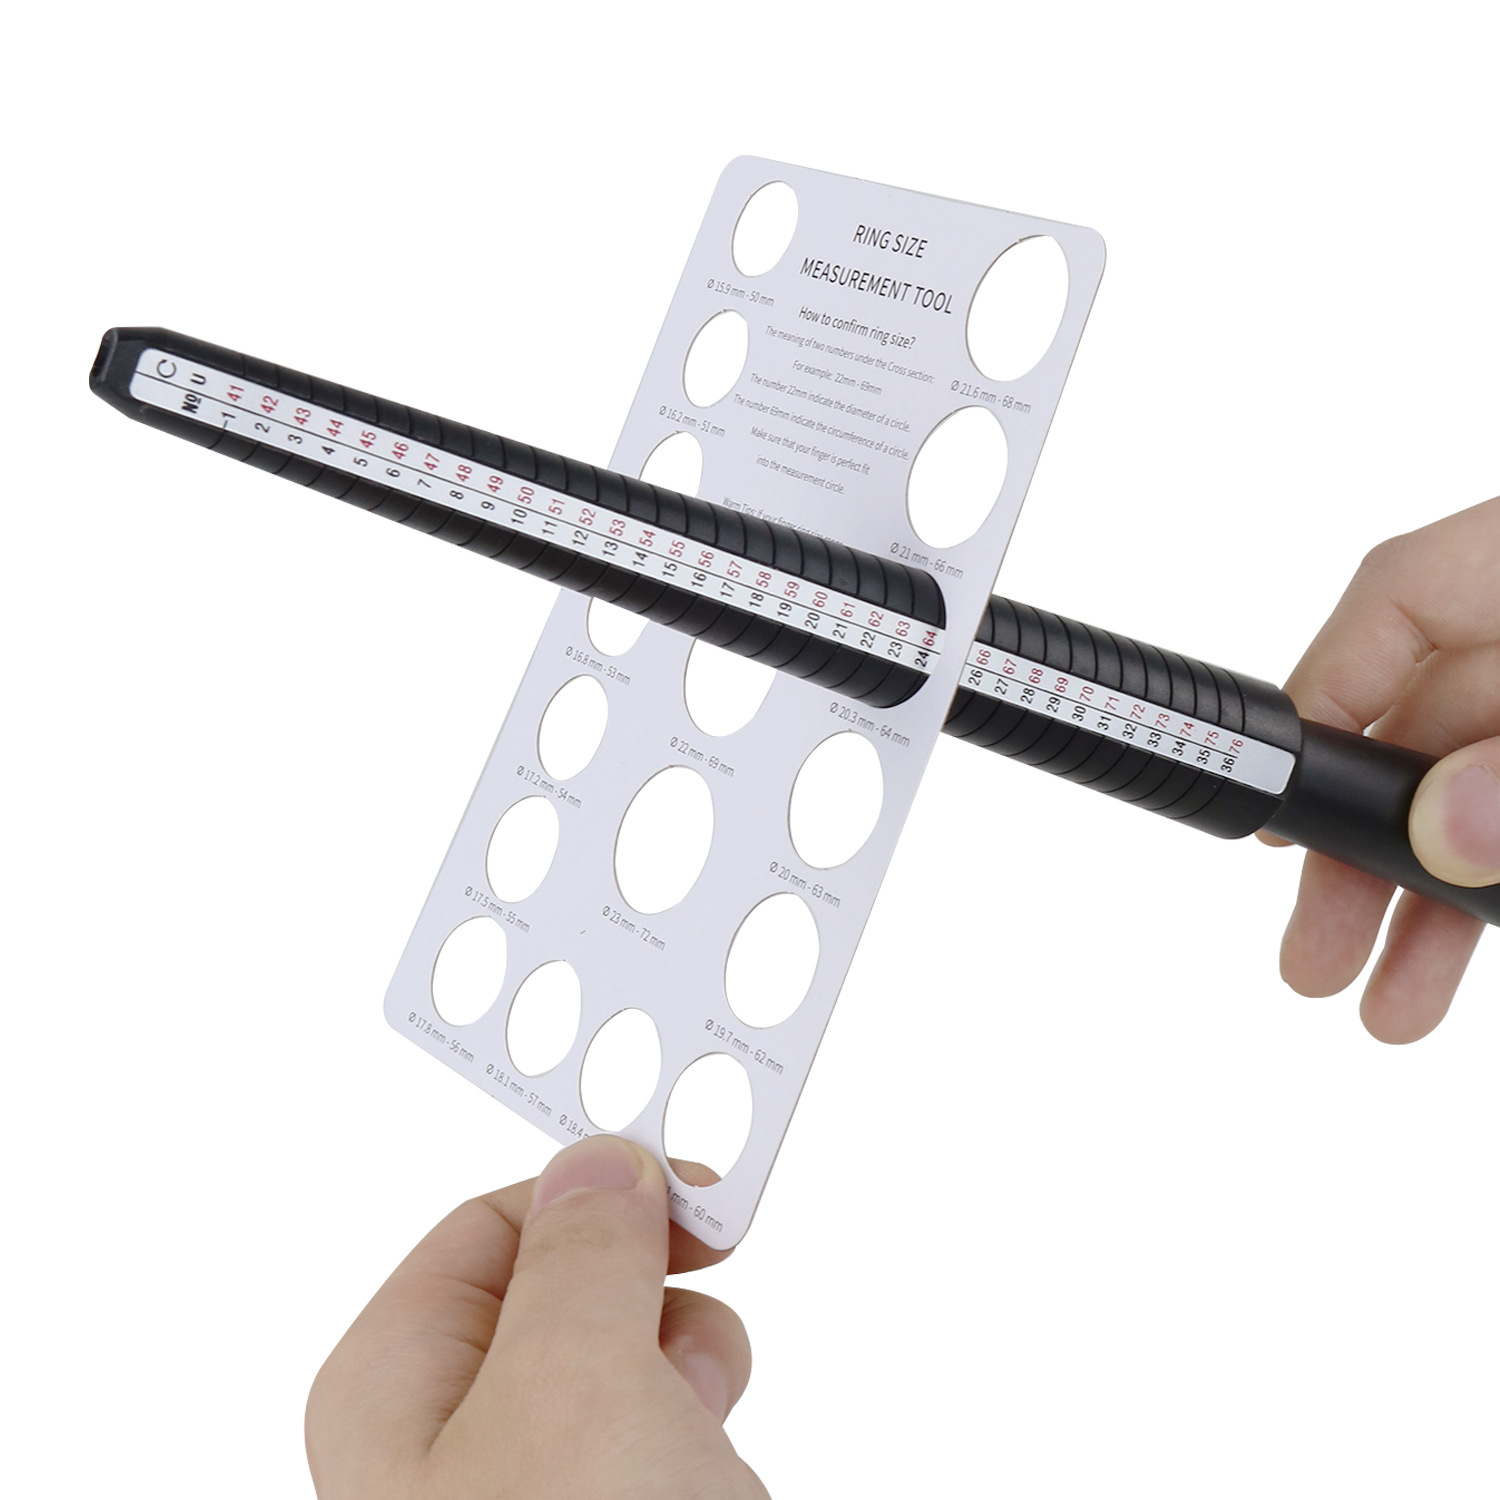 戒指测量卡板 欧码美码手指围大小筛选卡片周长尺寸圈口量具工具